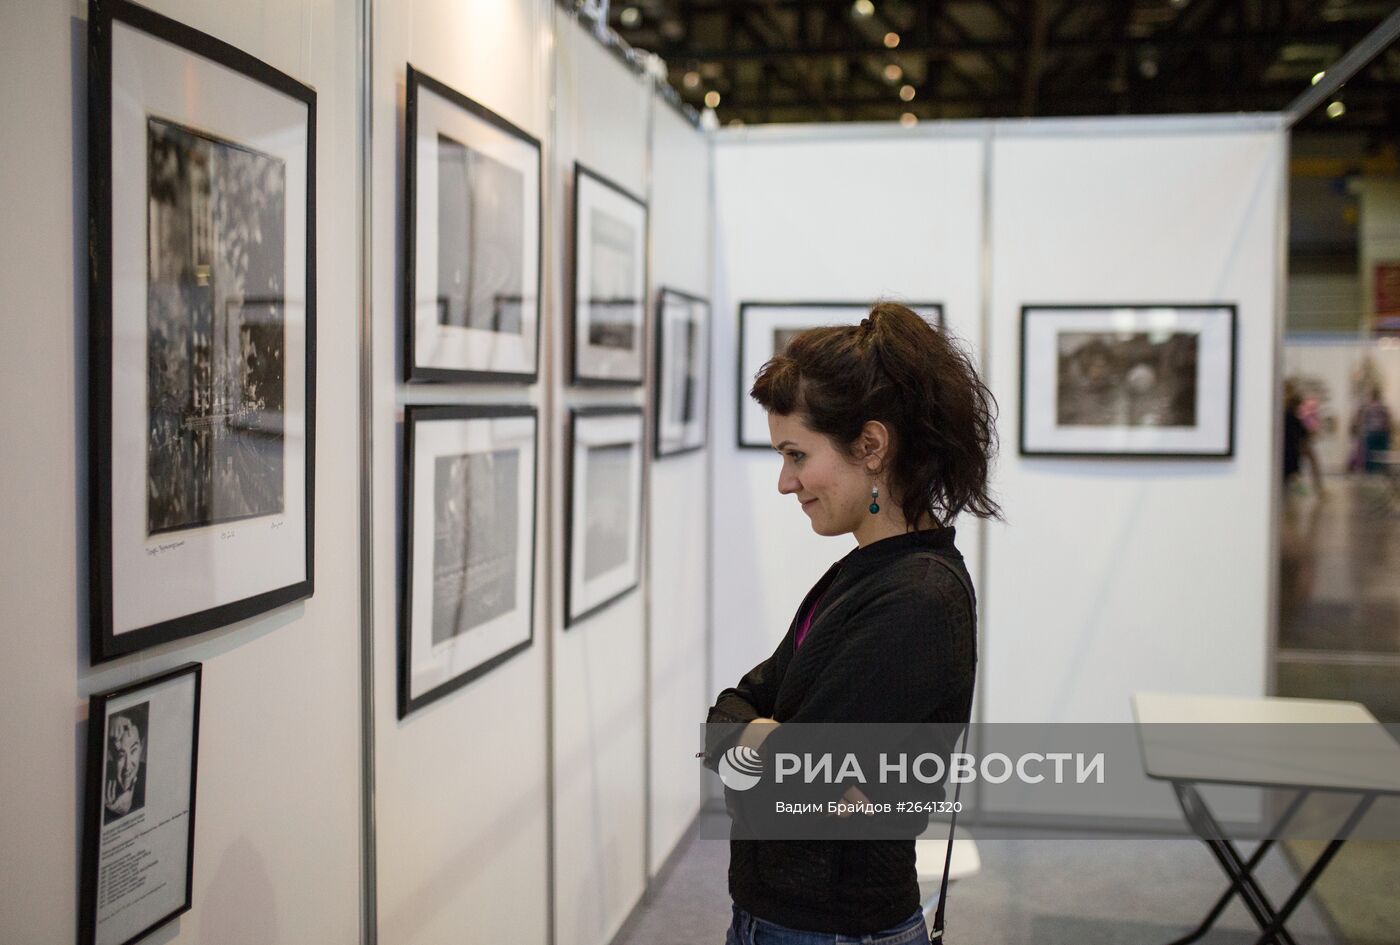 Открытие художественного форума "Арт-Уфа" в рамках празднования Дня России и Дня города Уфы